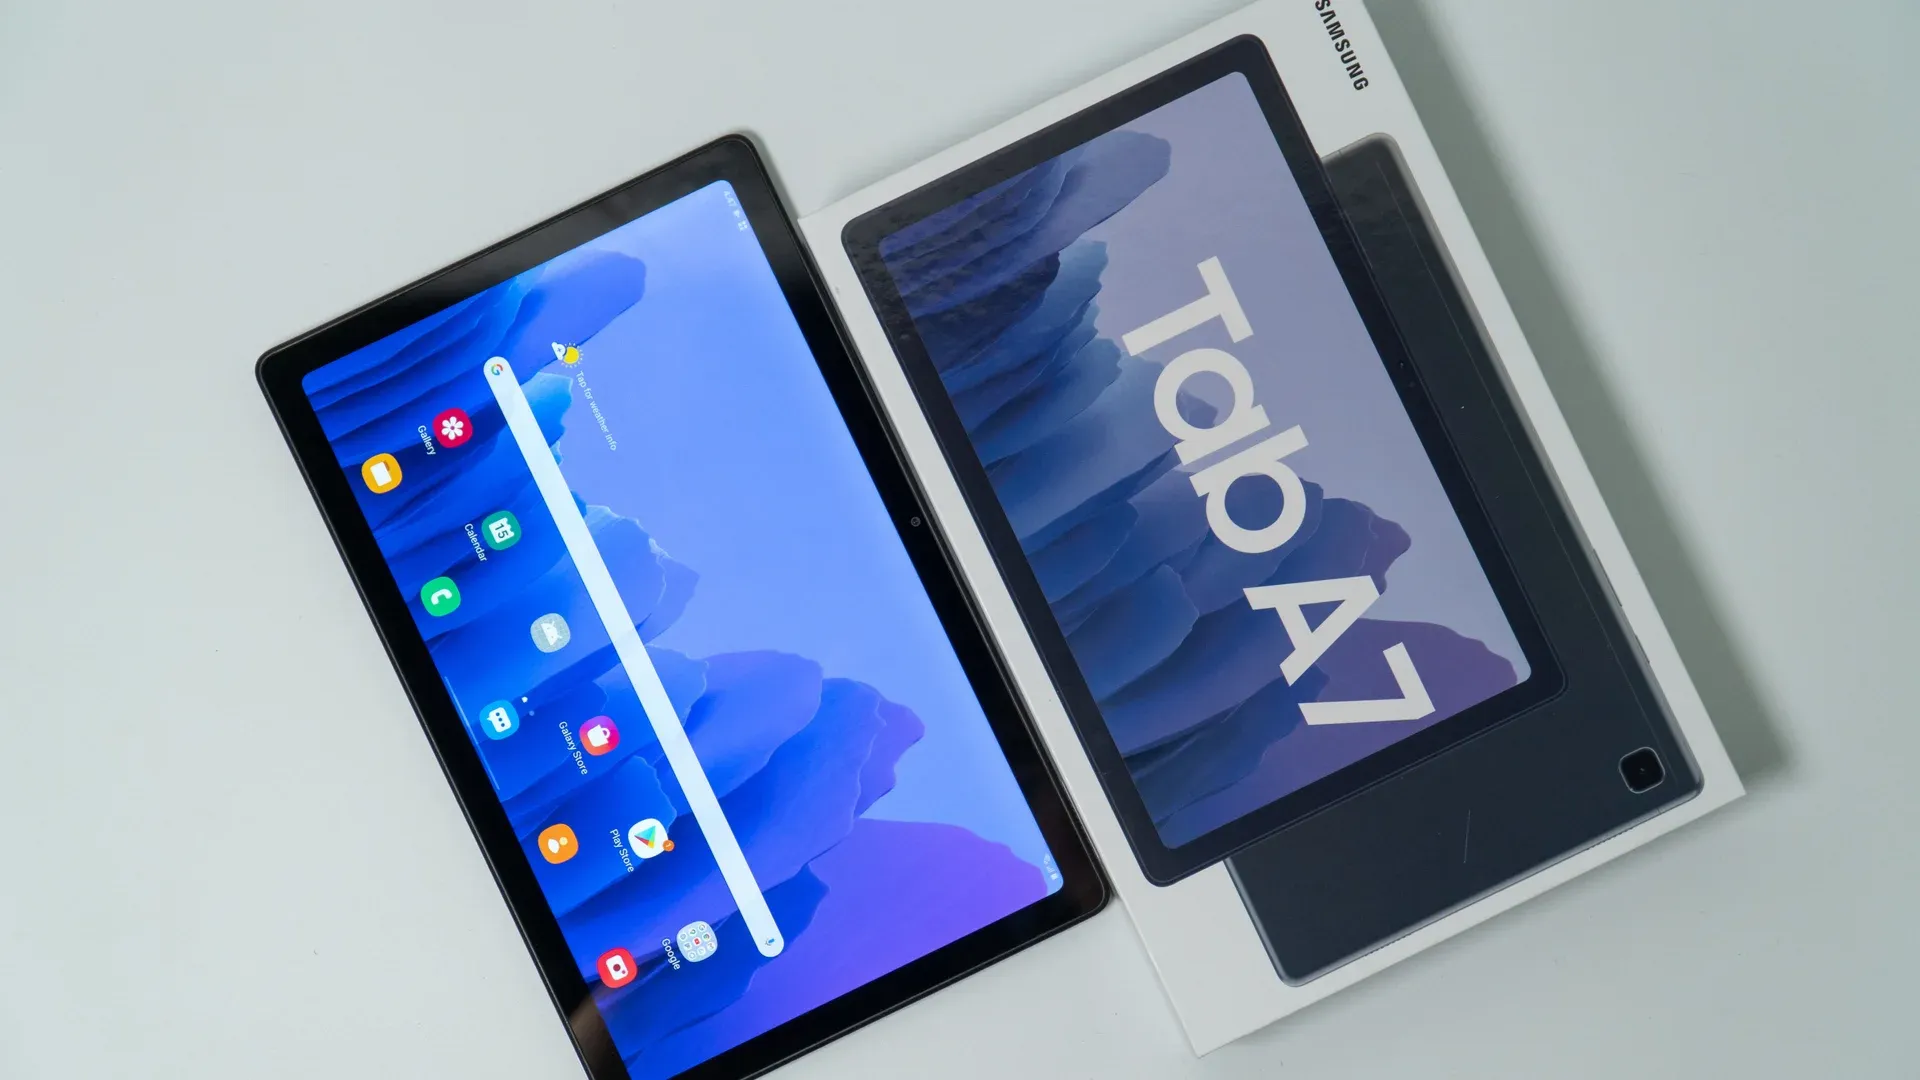 Detalhe do Galaxy Tab A7, um dos melhores tablets custo-benefício, exposto sobre a mesa